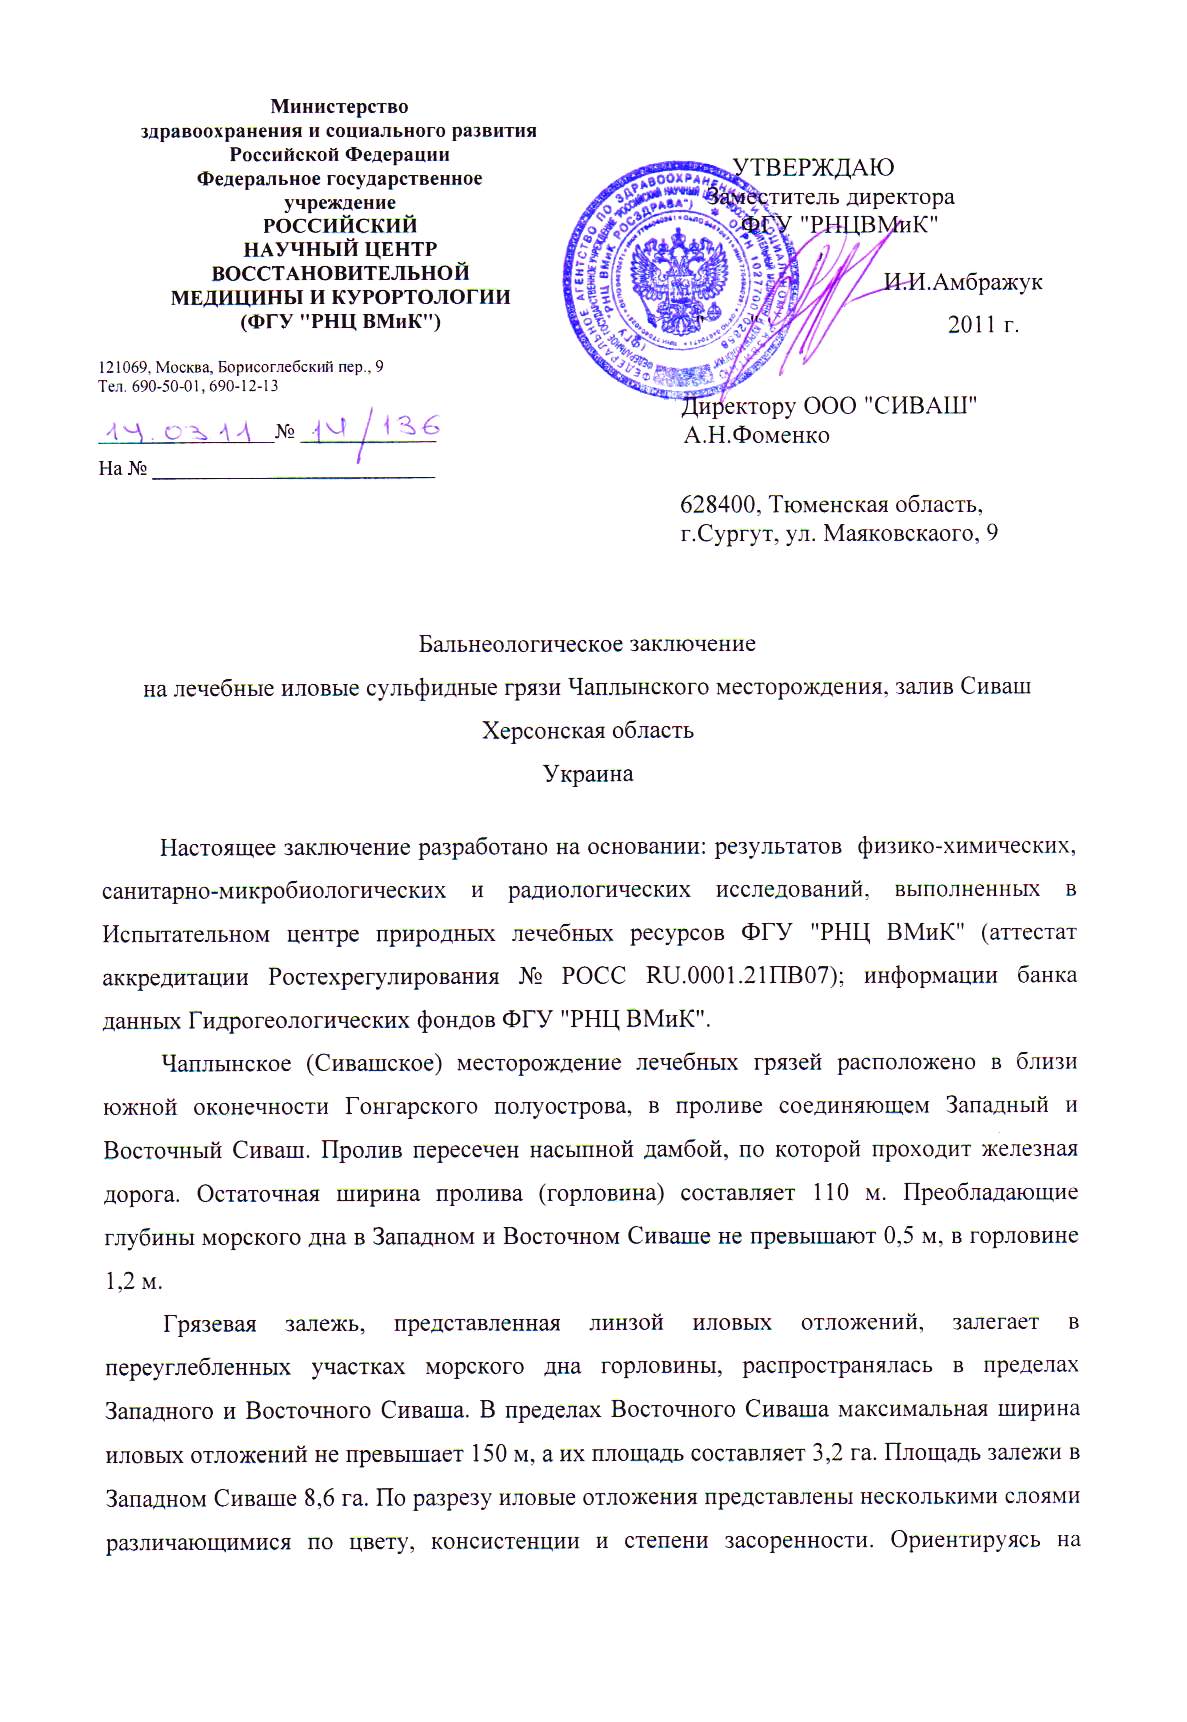 Бальнеологическое заключение о лечебных грязях Сиваш в России страница1